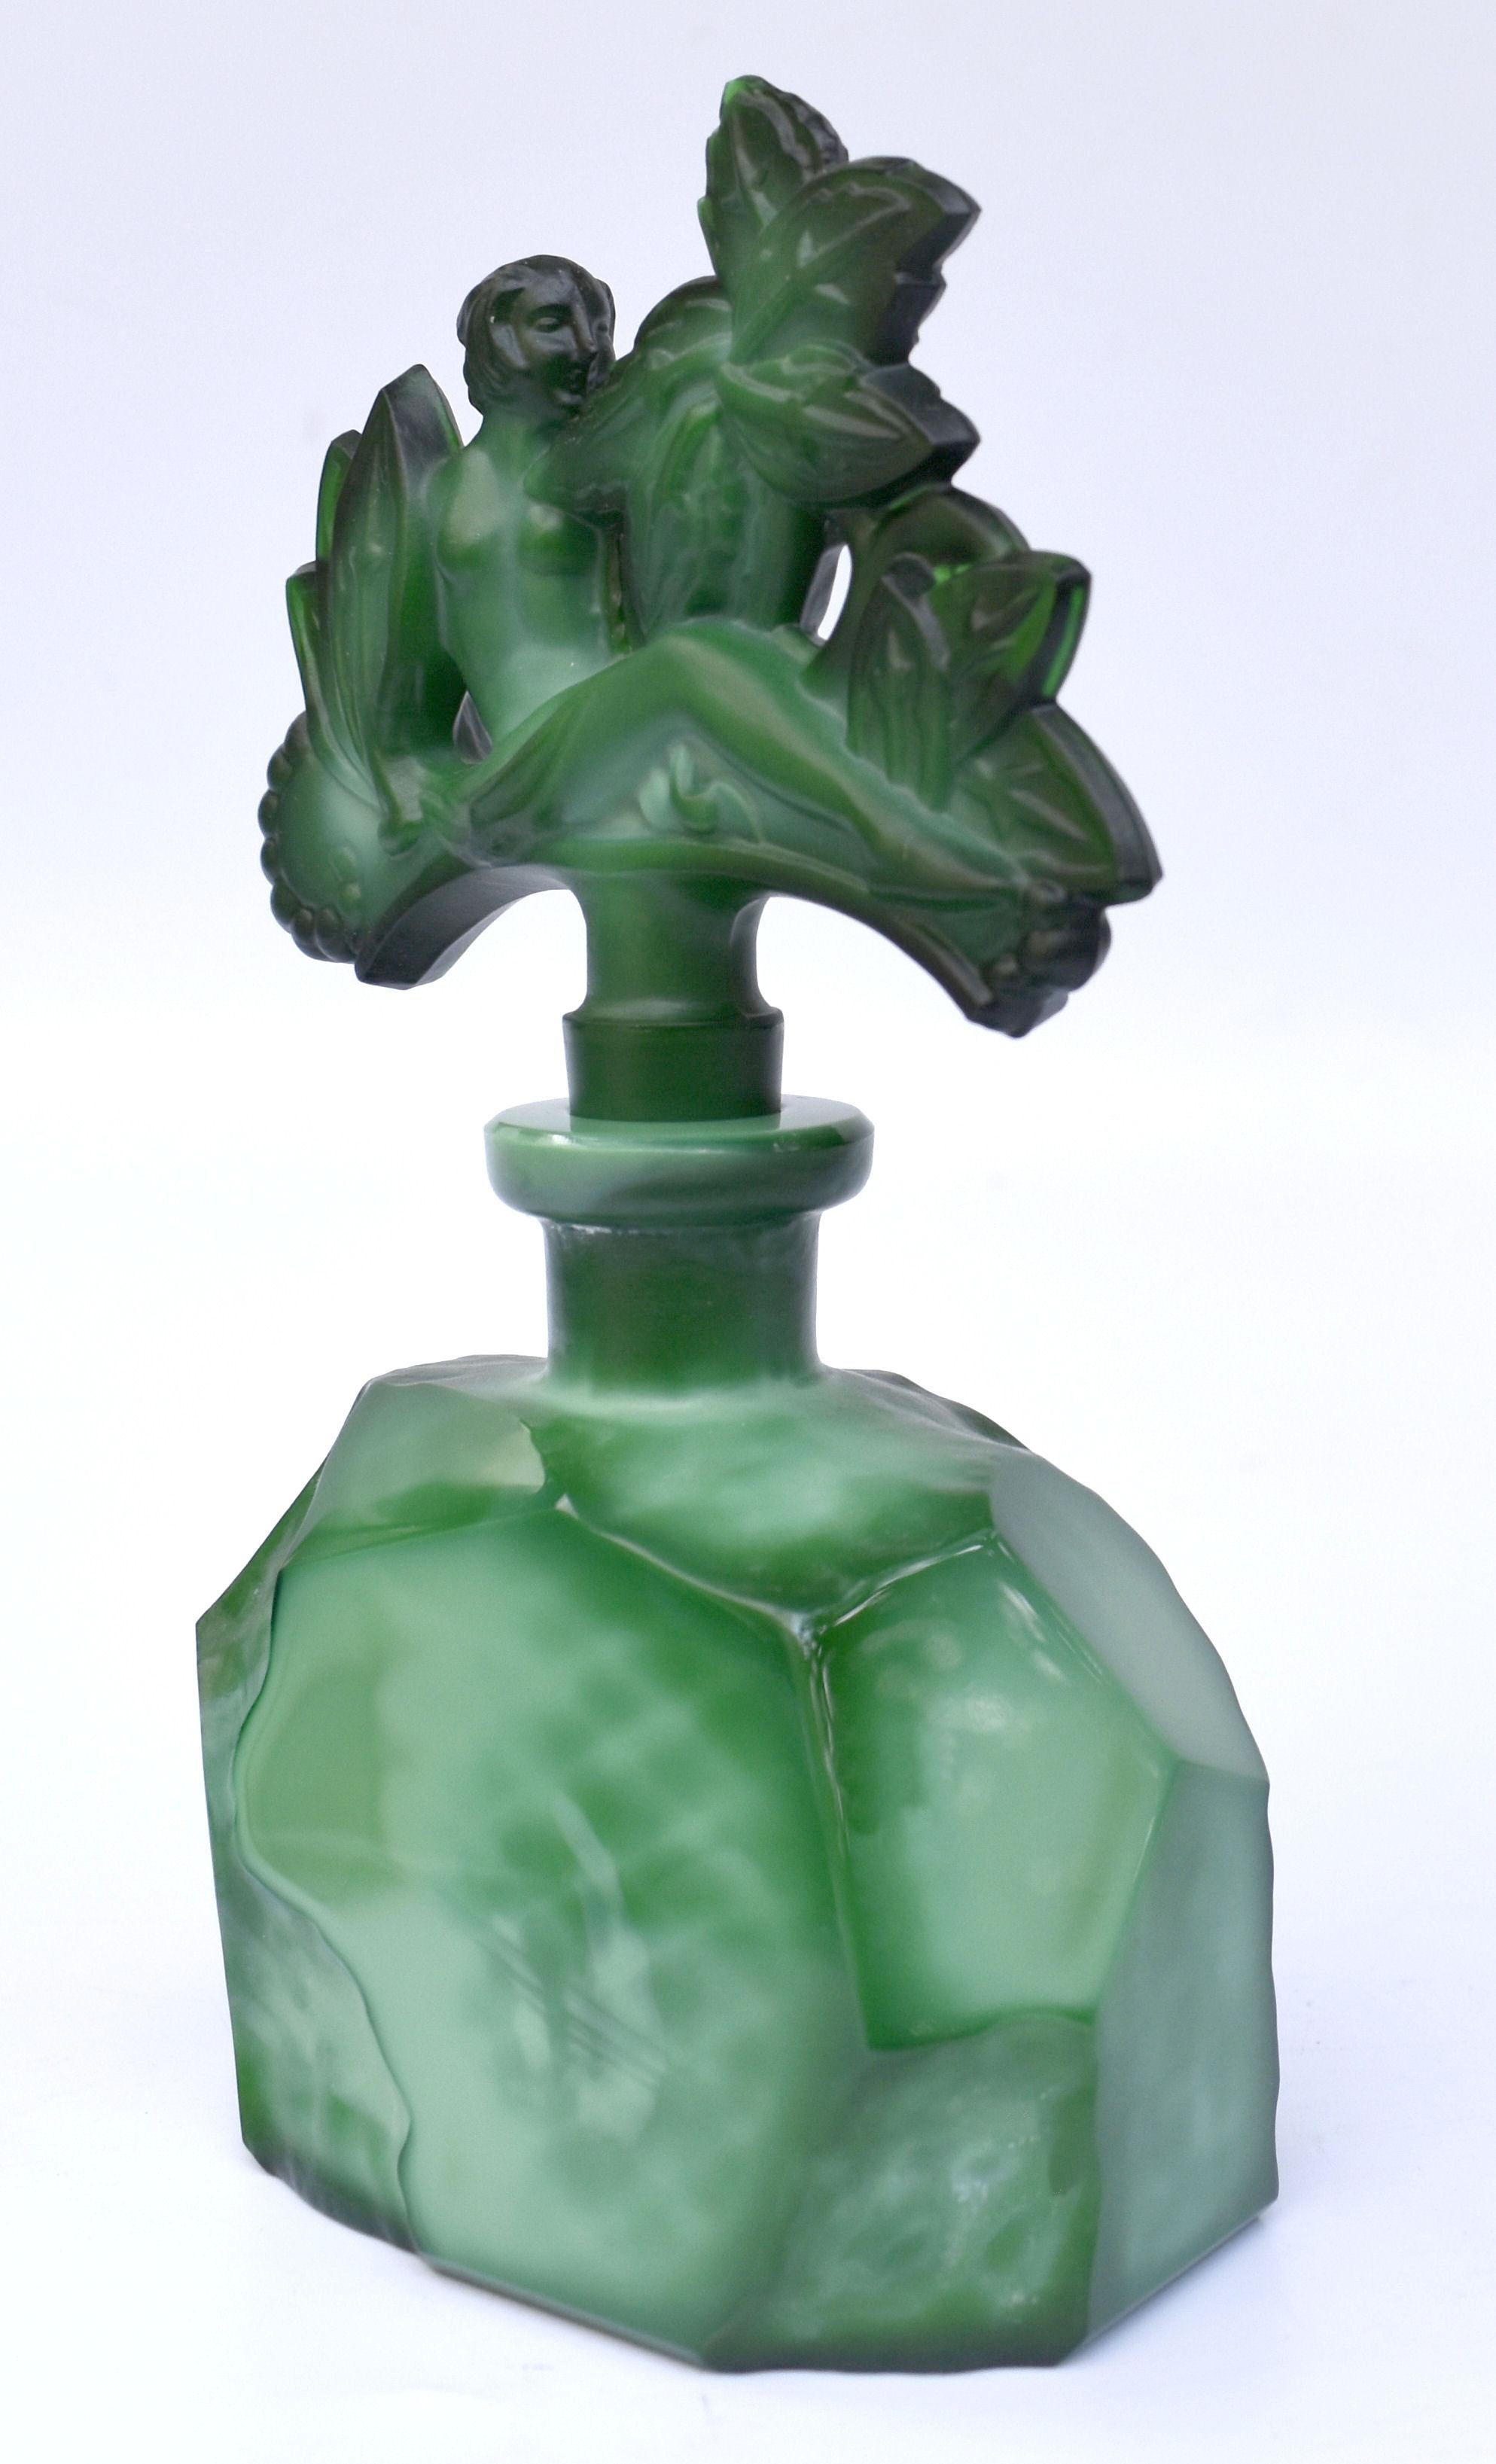 Un très beau flacon de parfum Art Déco en verre de malachite vert avec une figure féminine en relief sur le bouchon. Fabriqué en Tchécoslovaquie, cet étonnant flacon de parfum est attribué à Schlevogt ,Hoffmann et Ingrid qui sont largement reconnus